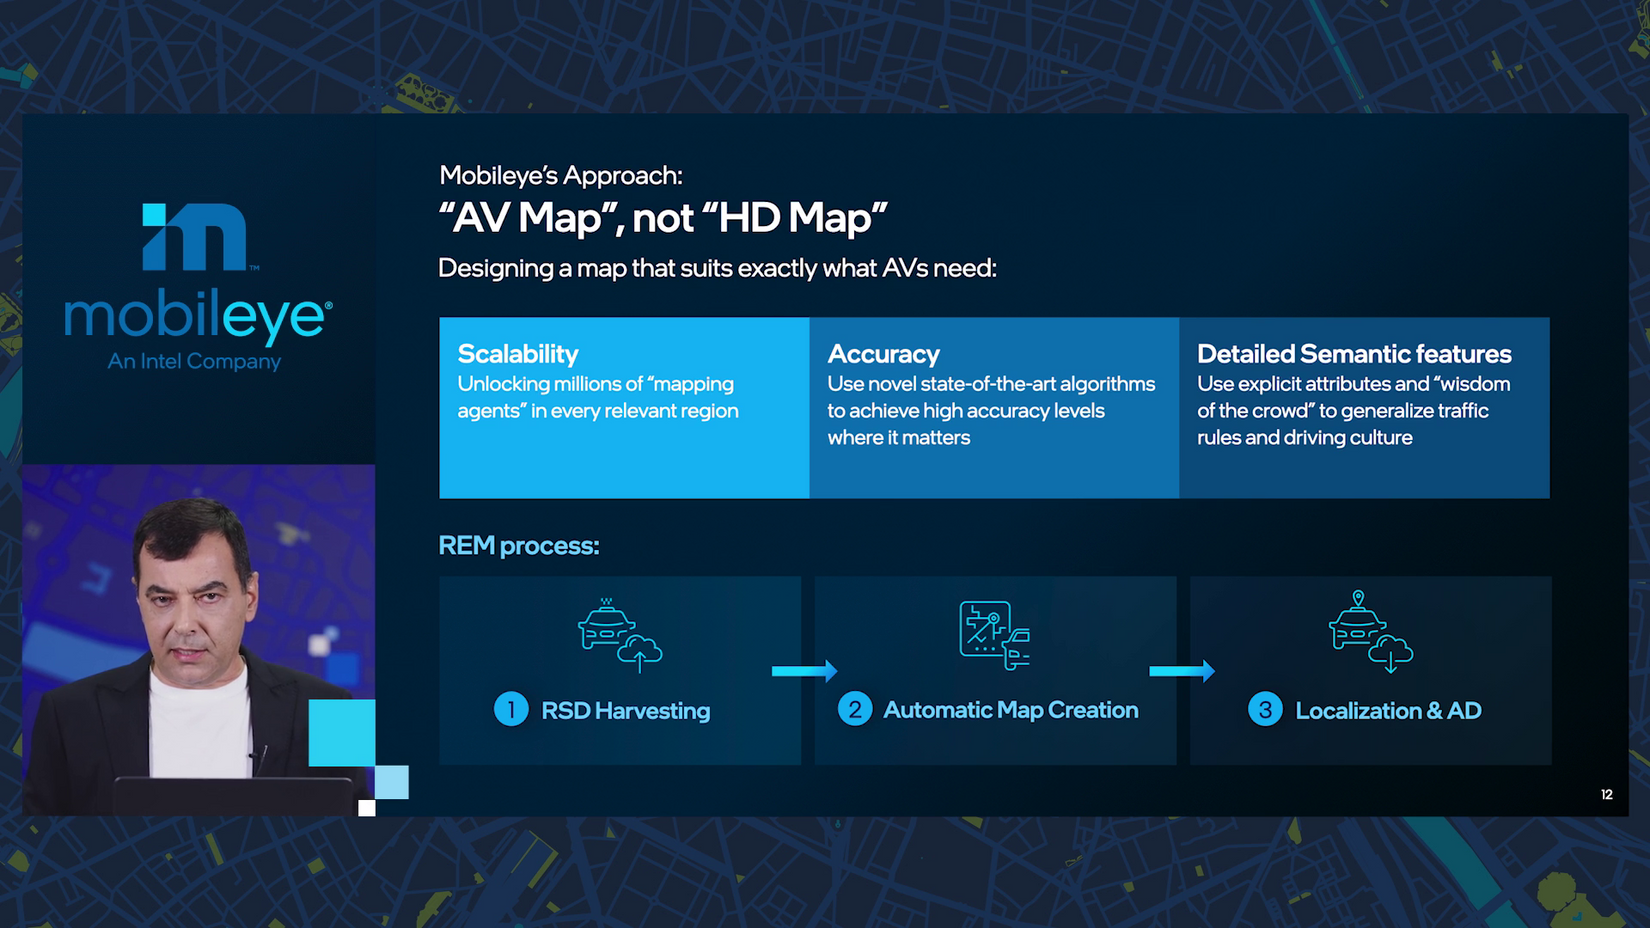 Mobileye approach: "AV map", not "HD map"